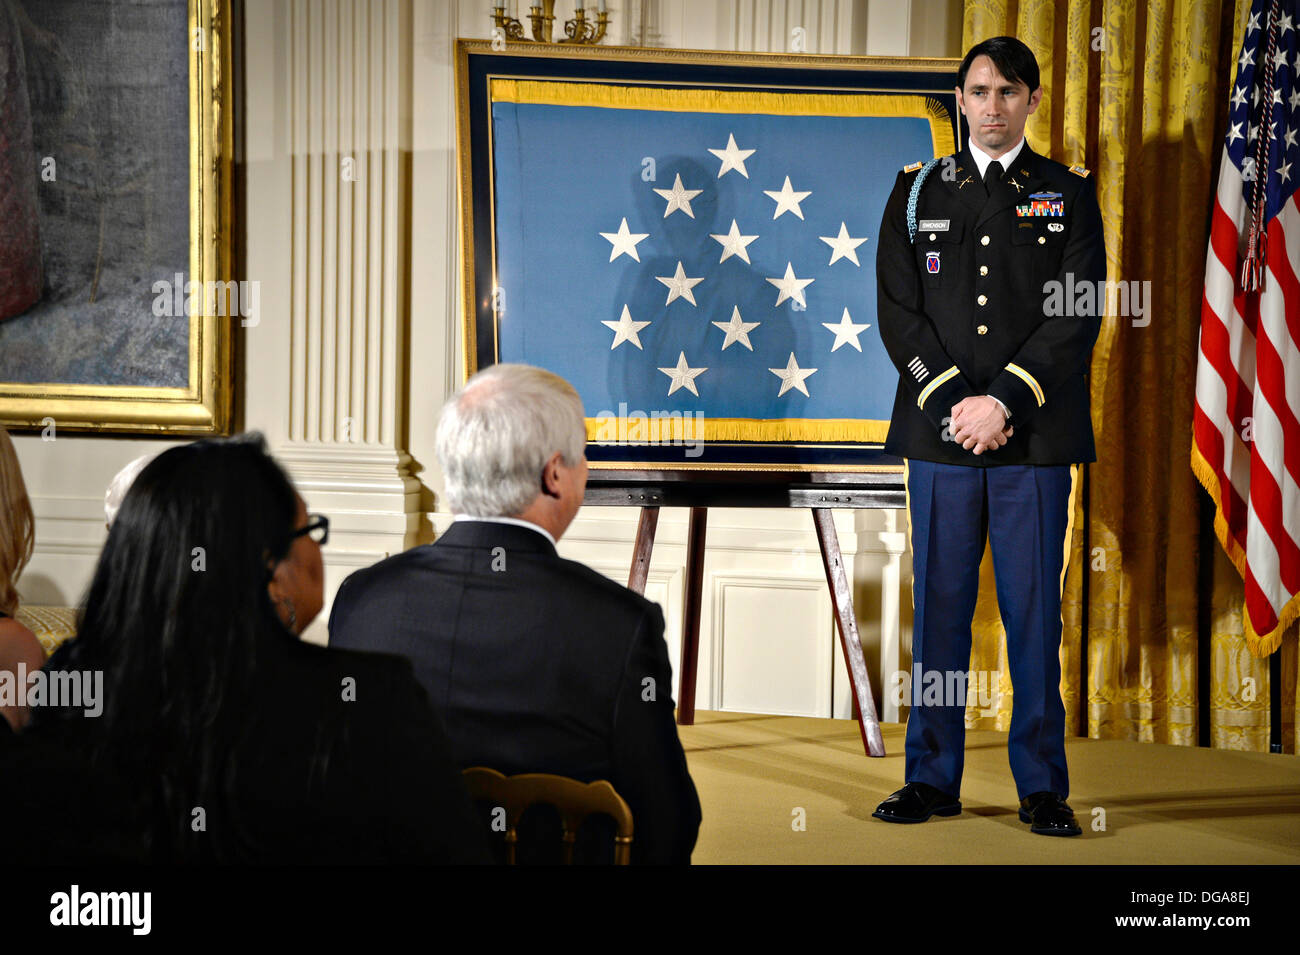 US Army Captain William D. Swenson während der Medal Of Honor-Zeremonie im East Room des weißen Hauses 15. Oktober 2013 in Washington, DC. Die Medal Of Honor ist die höchste militärische Auszeichnung des Landes. Stockfoto